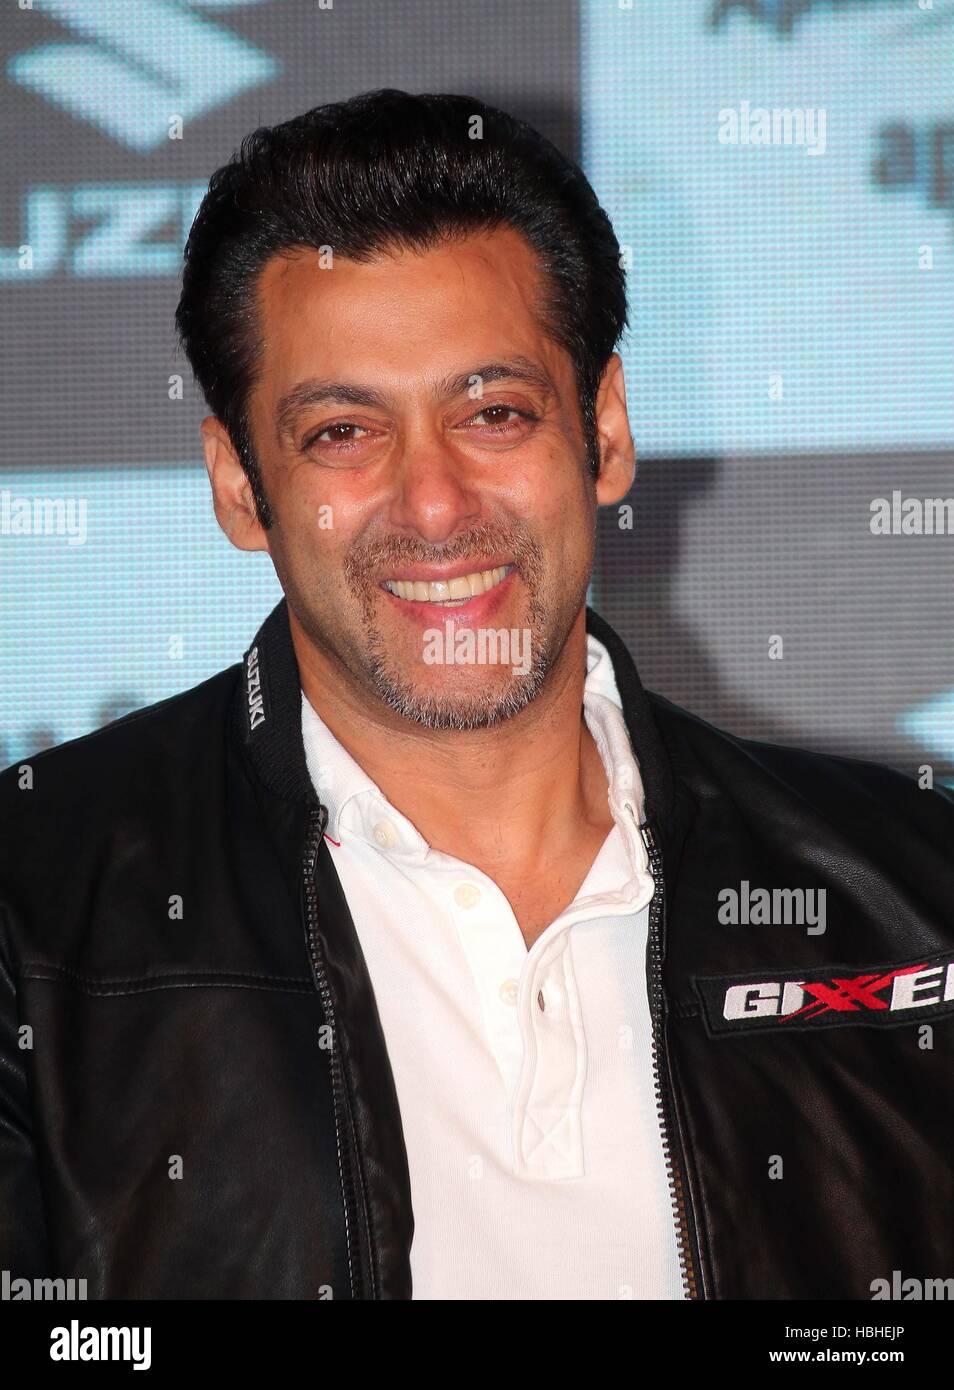 Salman Khan attore cinematografico indiano bollywood hindi durante il lancio di Suzuki due ruote la Gixxer moto e lo scooter Lets Mumbai India Asia , nessun modello di rilascio - solo per uso editoriale Foto Stock